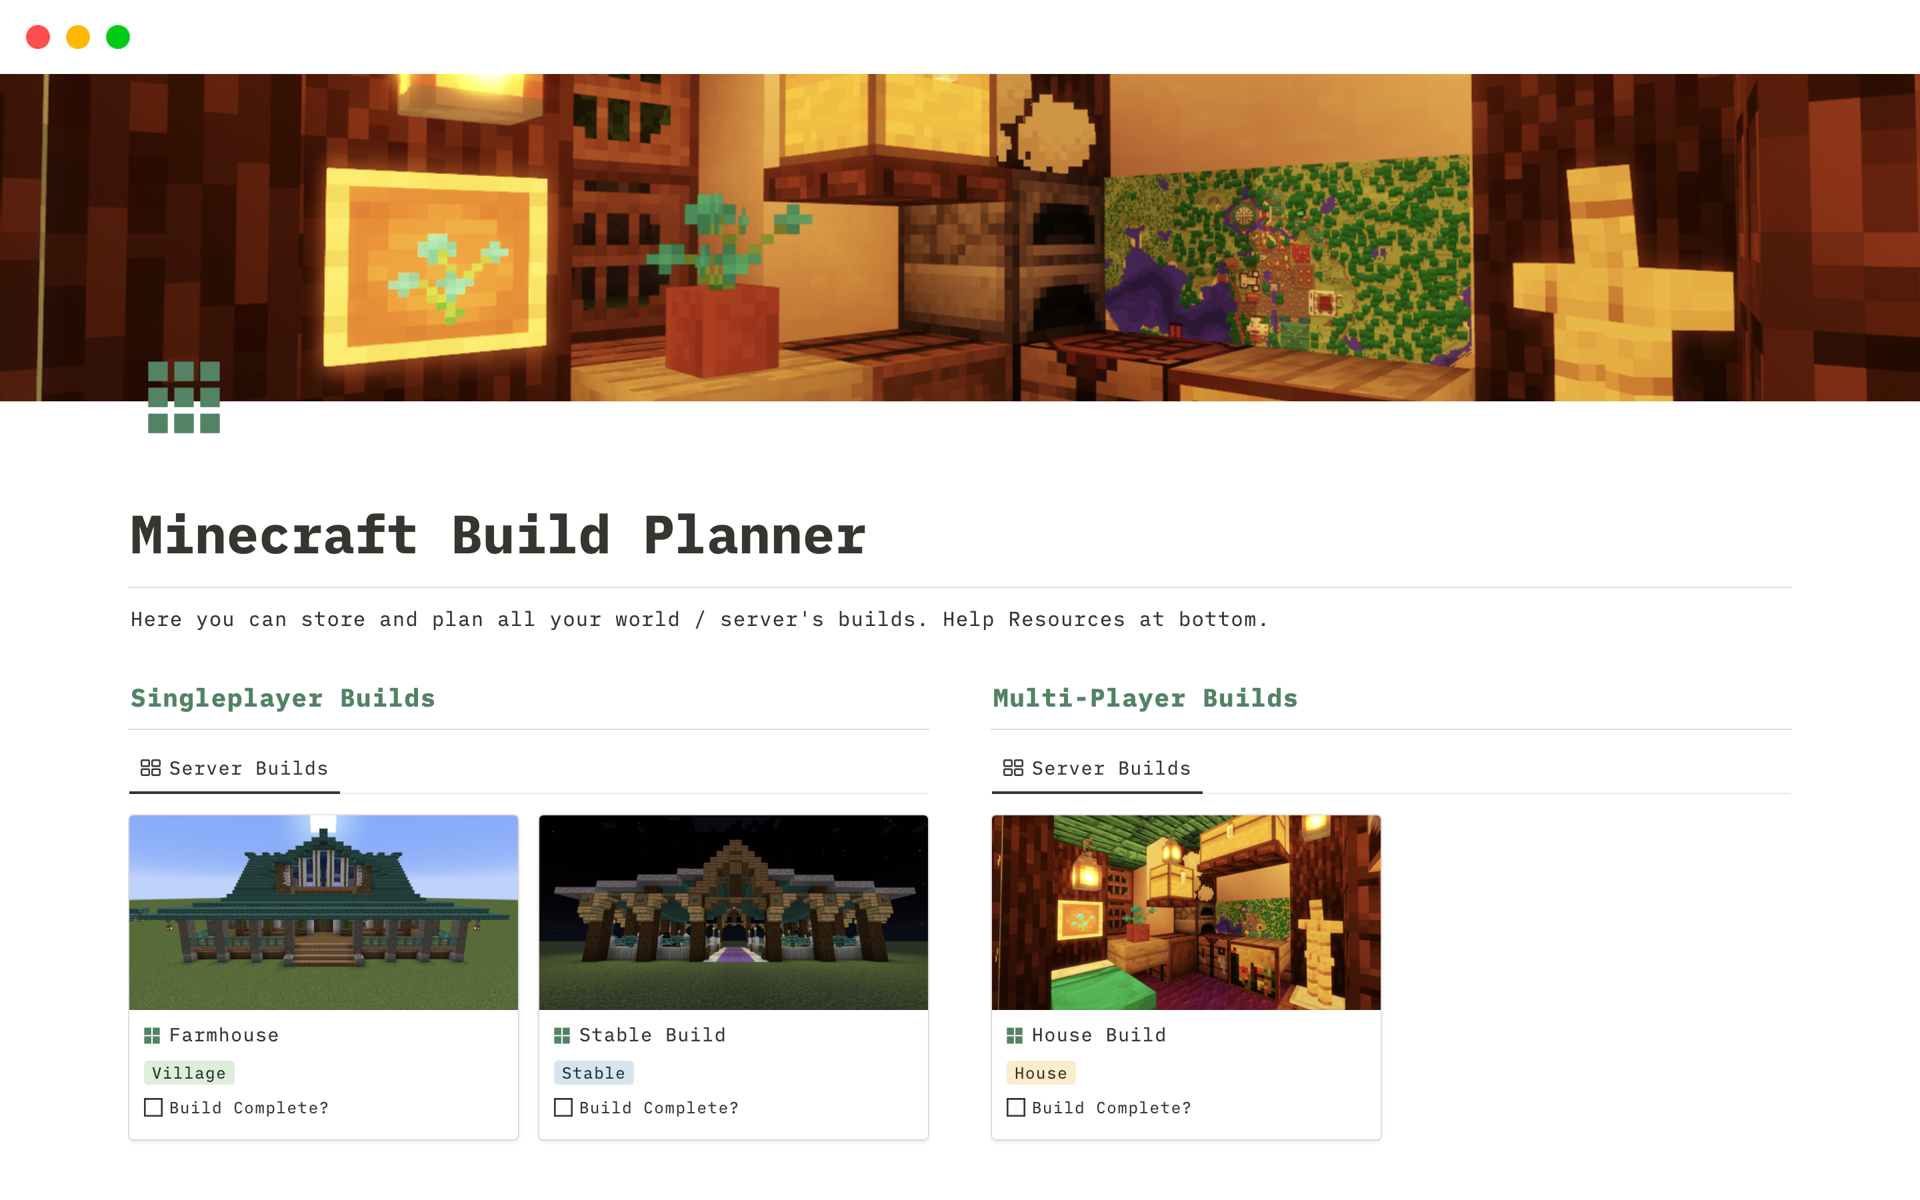 Uma prévia do modelo para Minecraft Build Planner